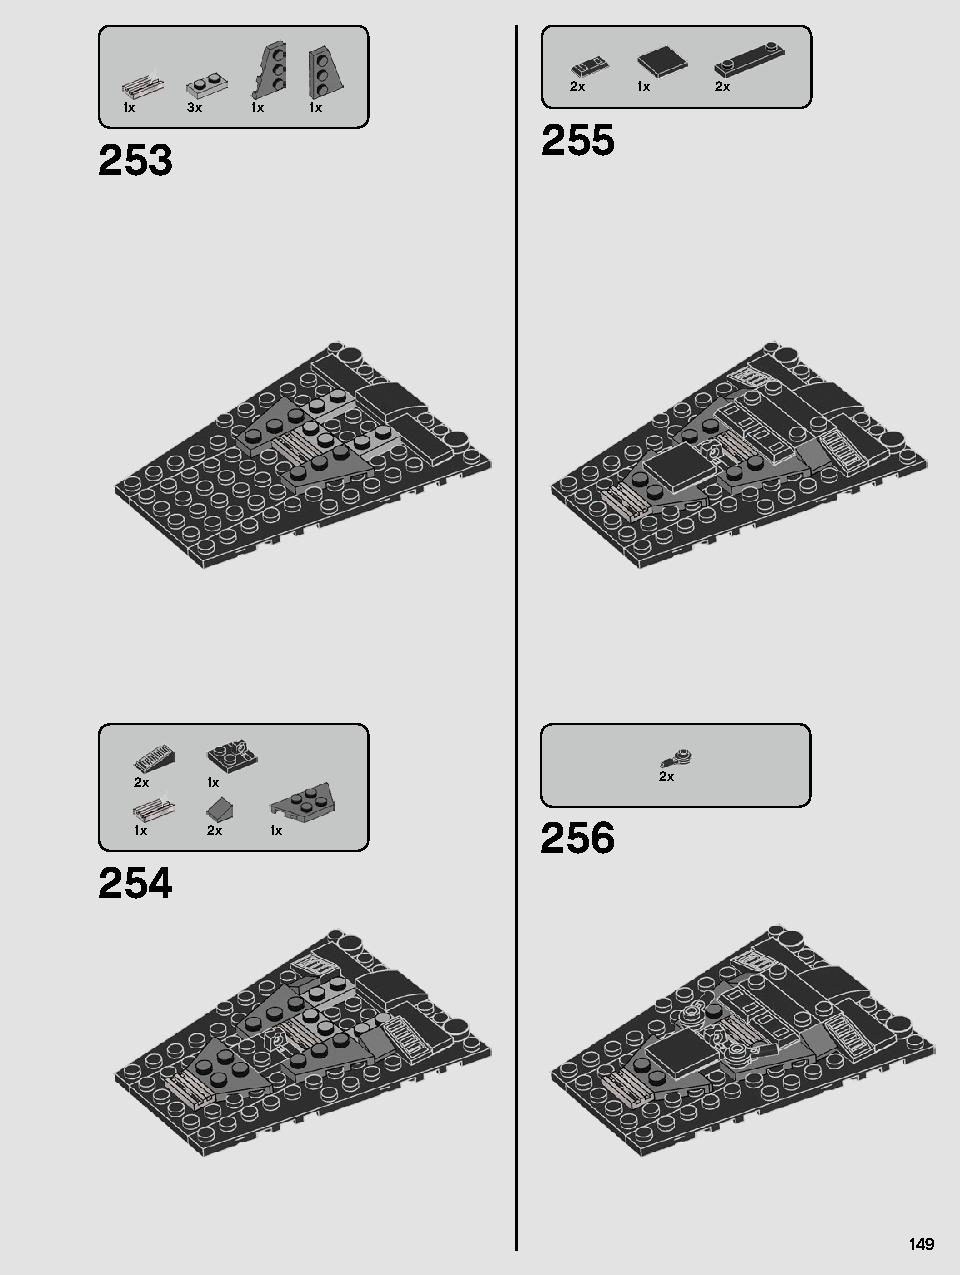 스타워즈 카일로 렌의 셔틀™ 75256 레고 세트 제품정보 레고 조립설명서 149 page